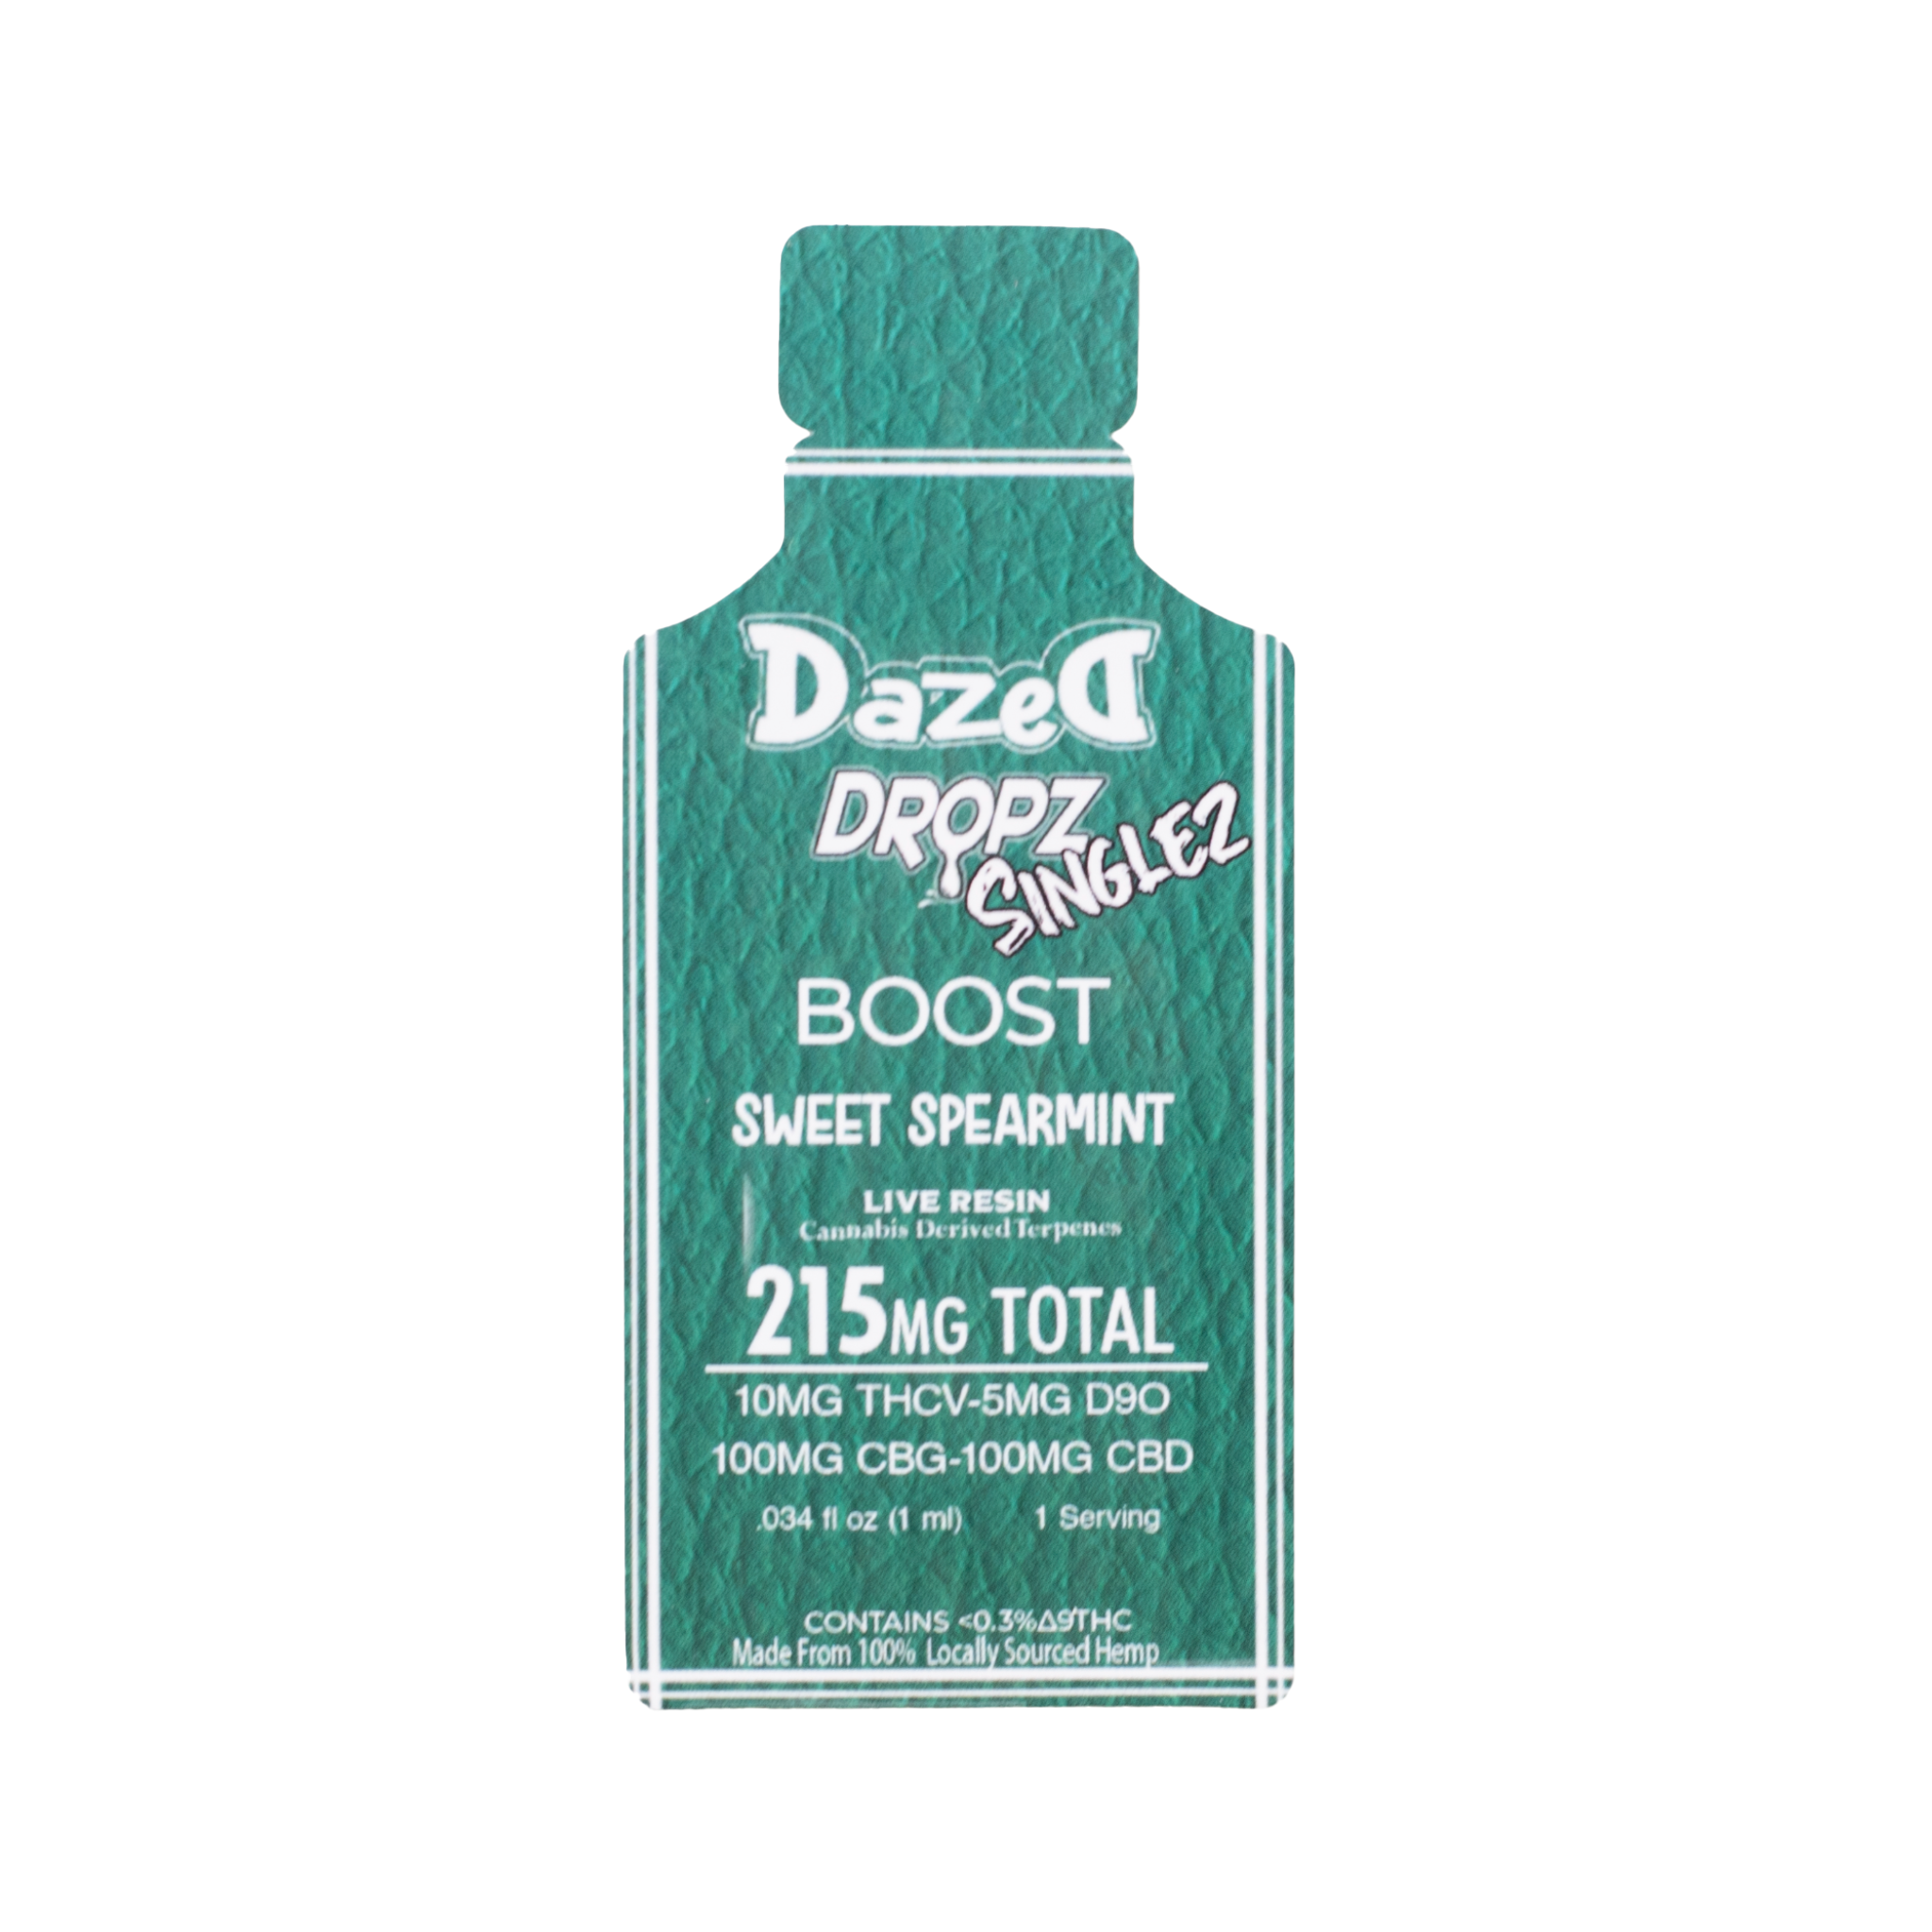 Sweet Spearmint “Boost” Dropz Singlez